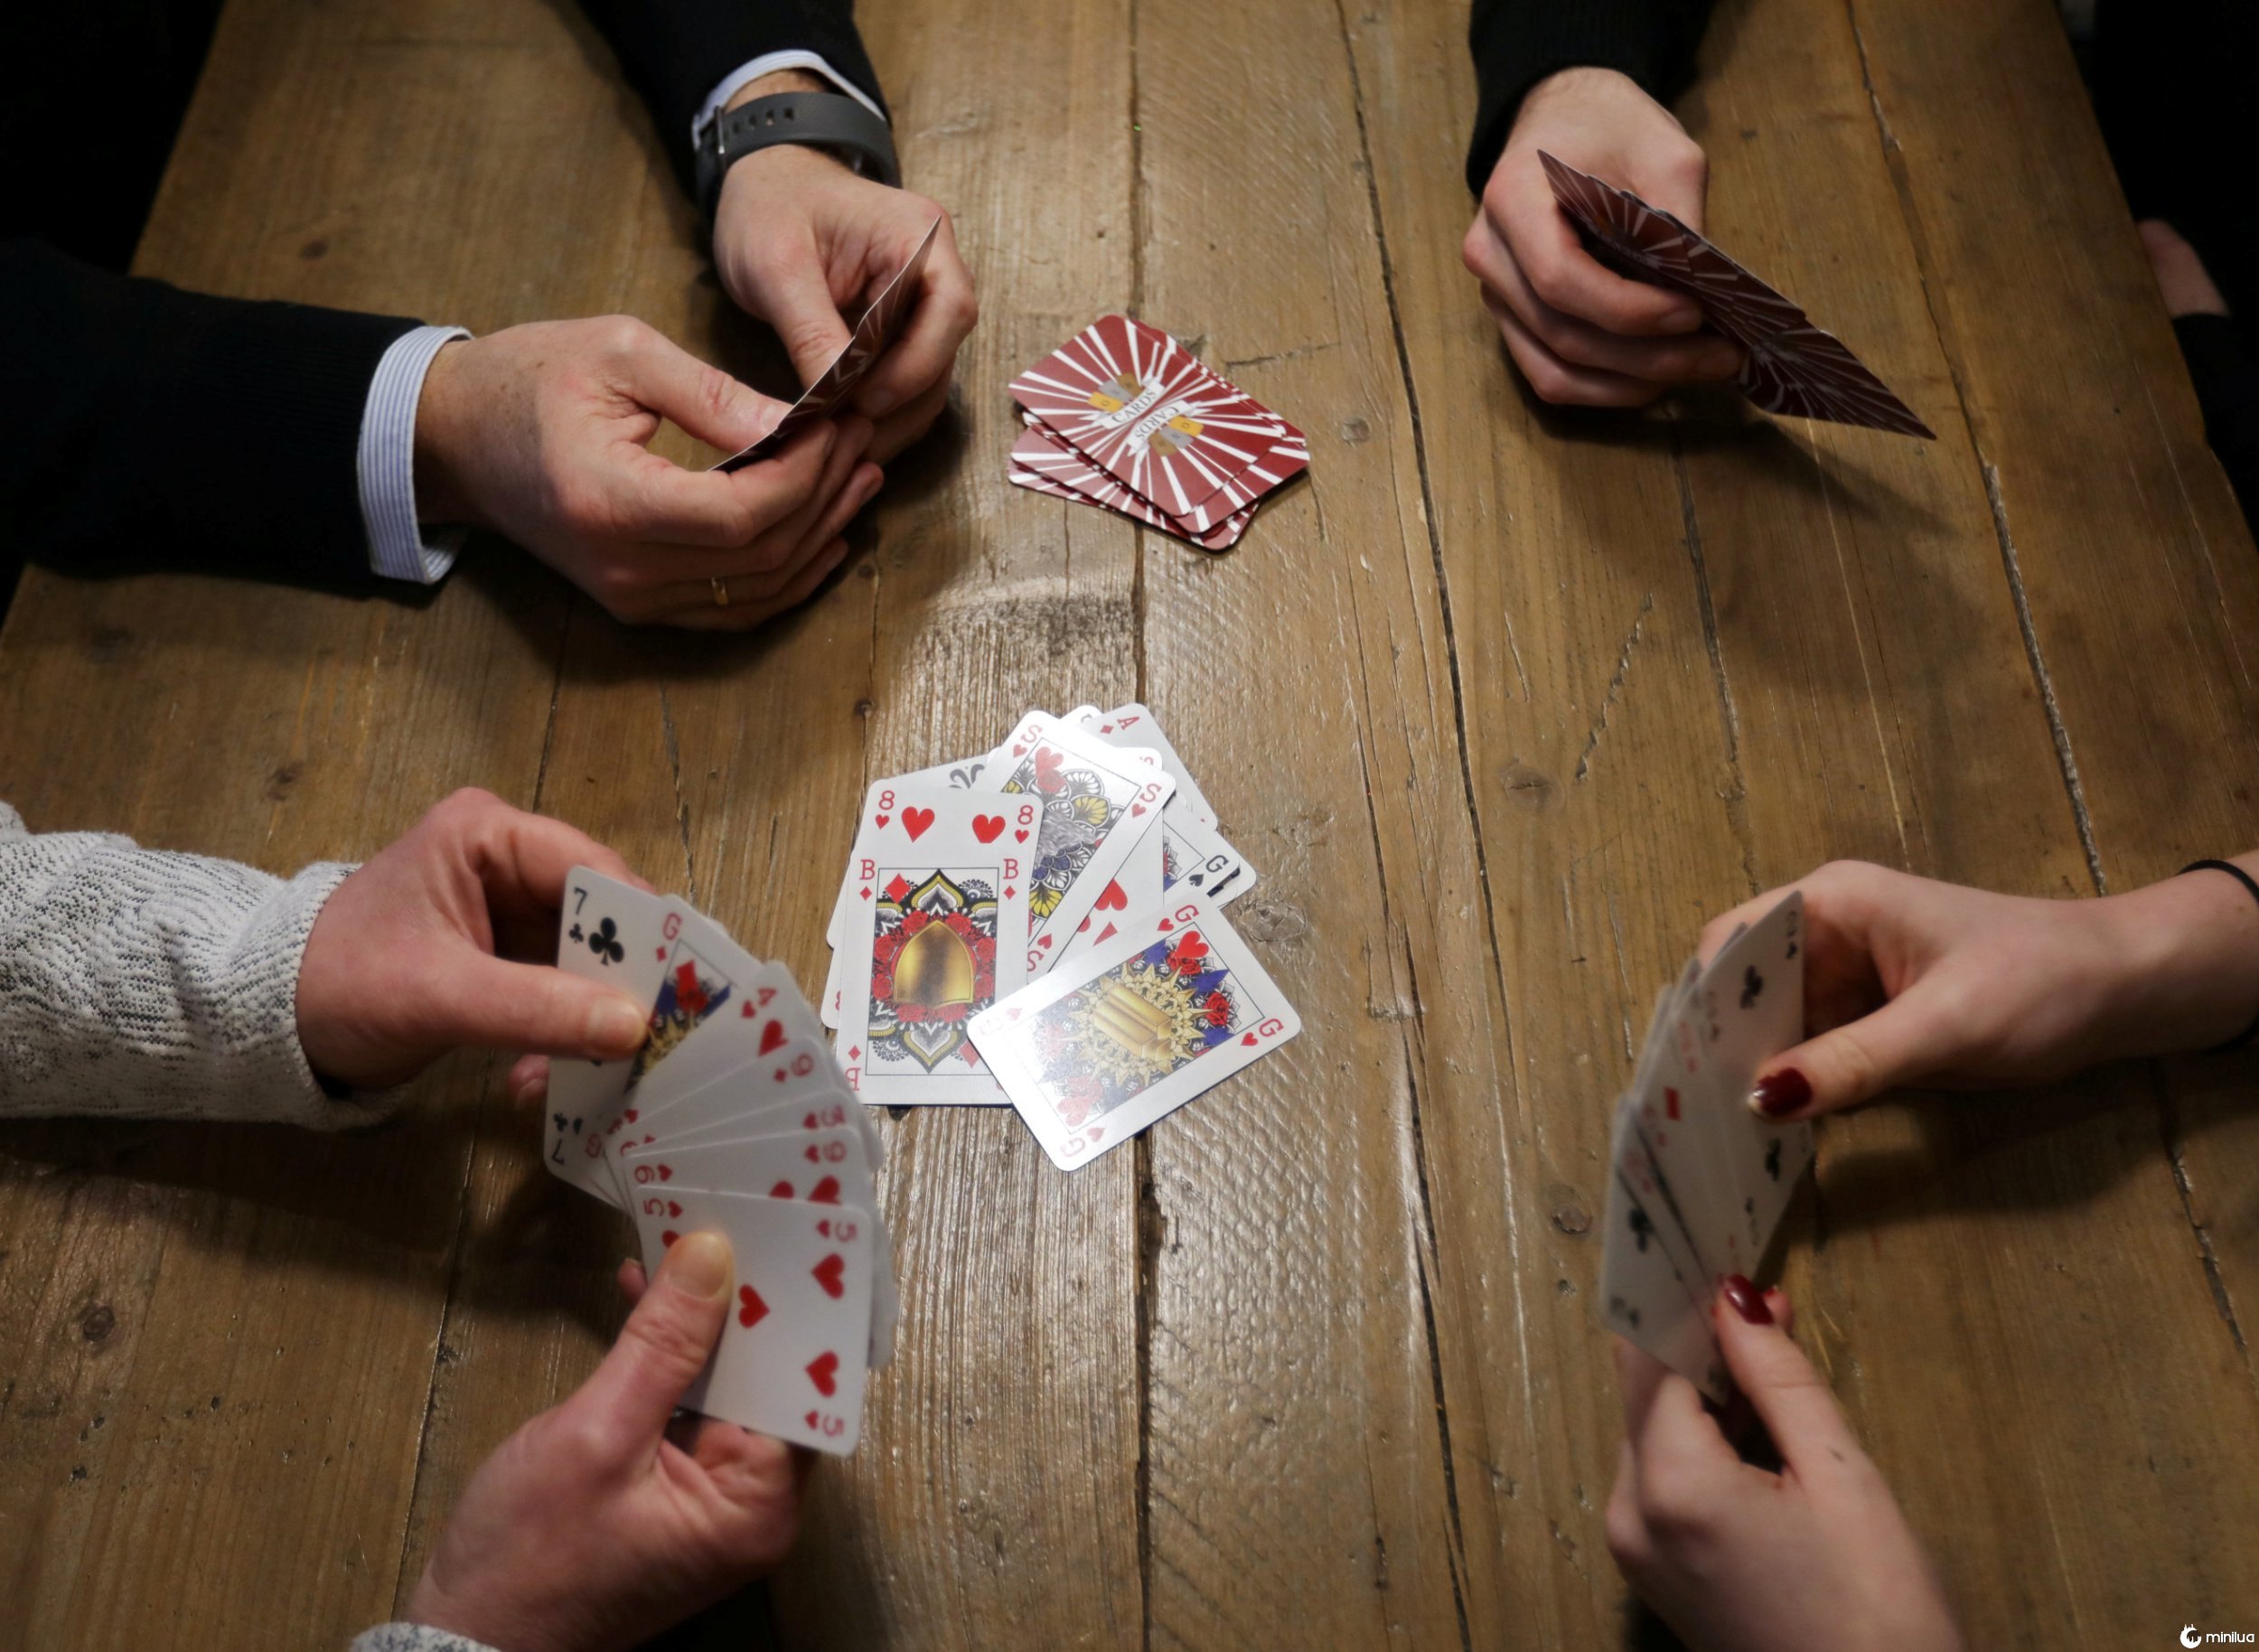 Mulher cria baralho de cartas sem gênero - então o rei não pode vencer a rainha